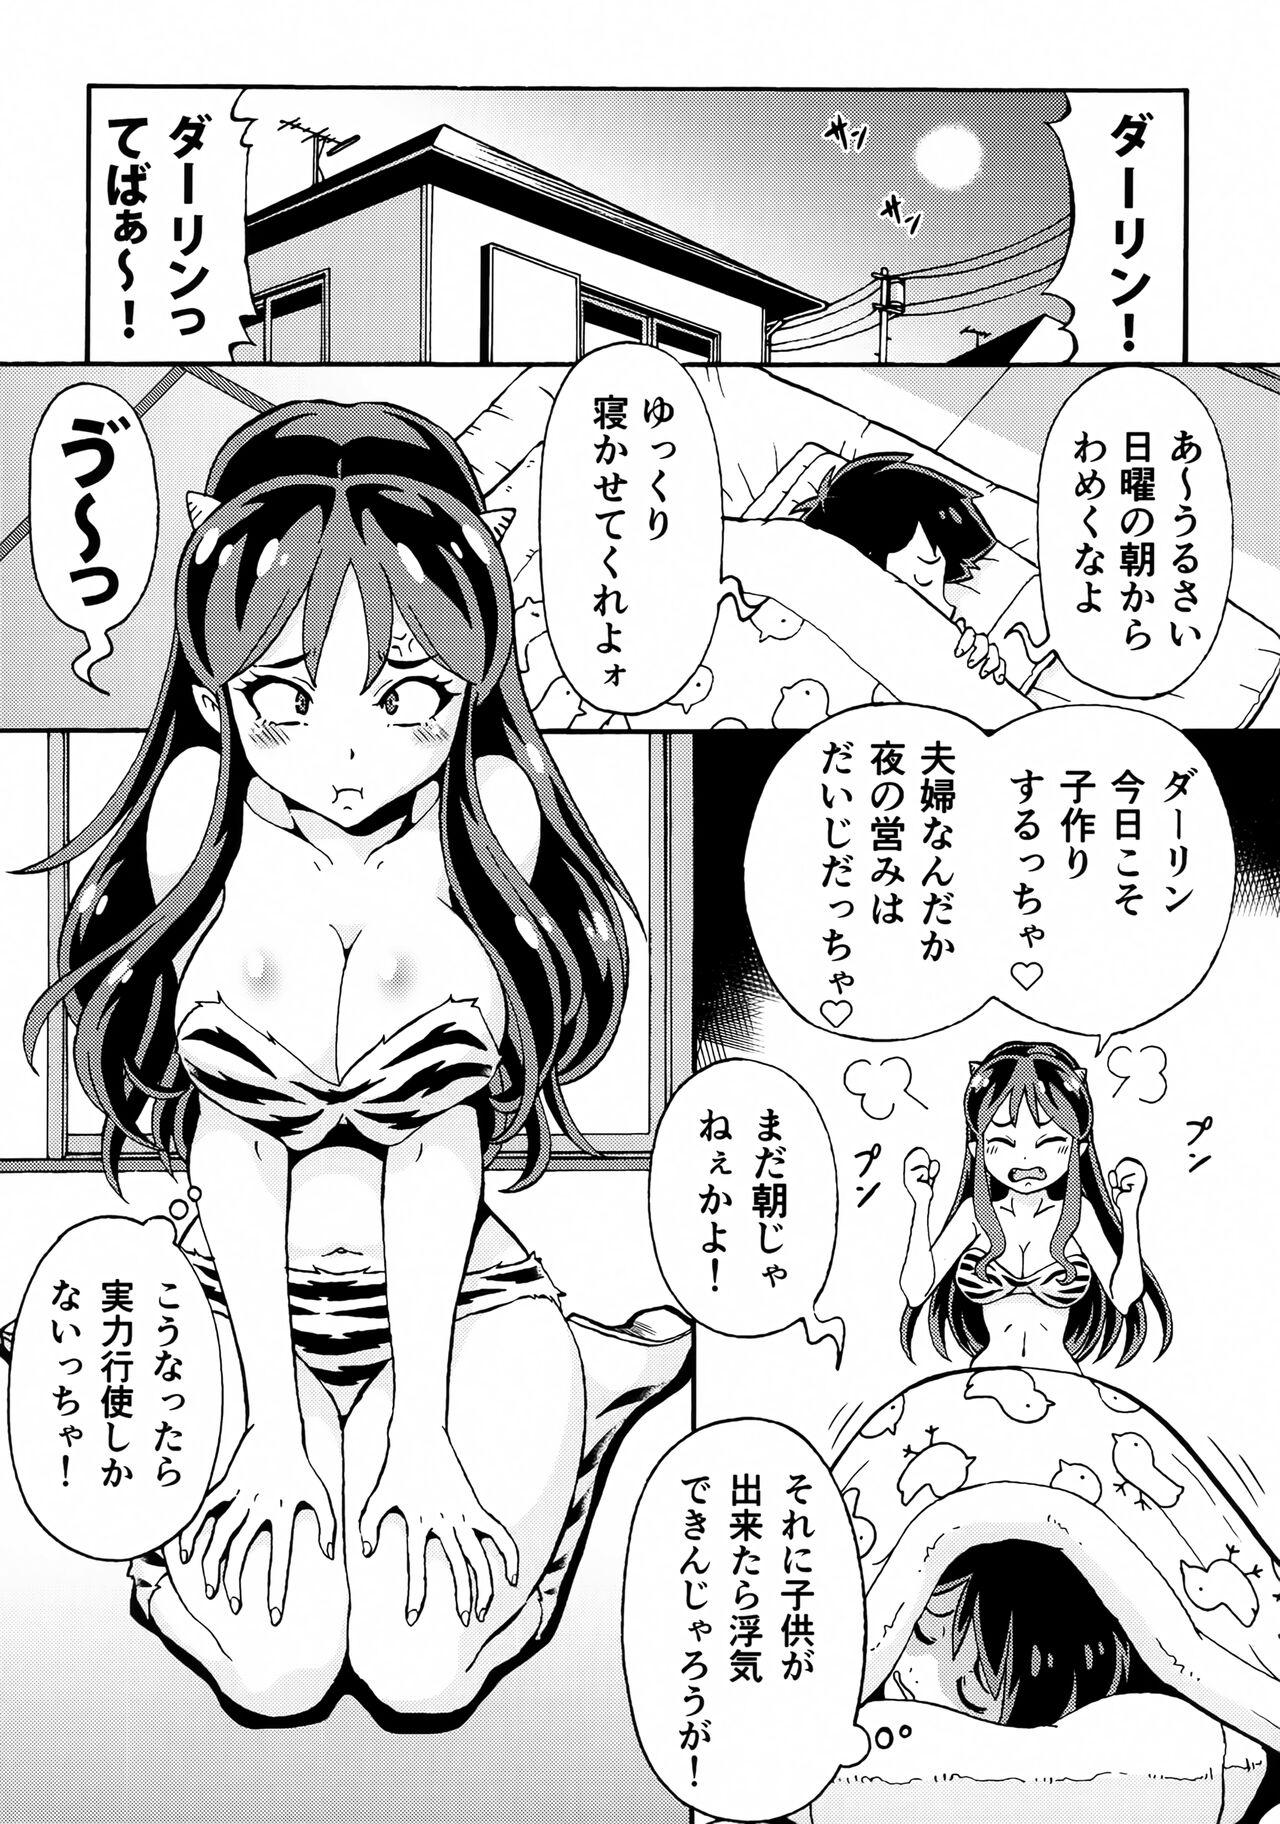 Buceta Sekuhara ☆ Nakadashi ☆ Oni Musume - Urusei yatsura Women Sucking Dicks - Page 2